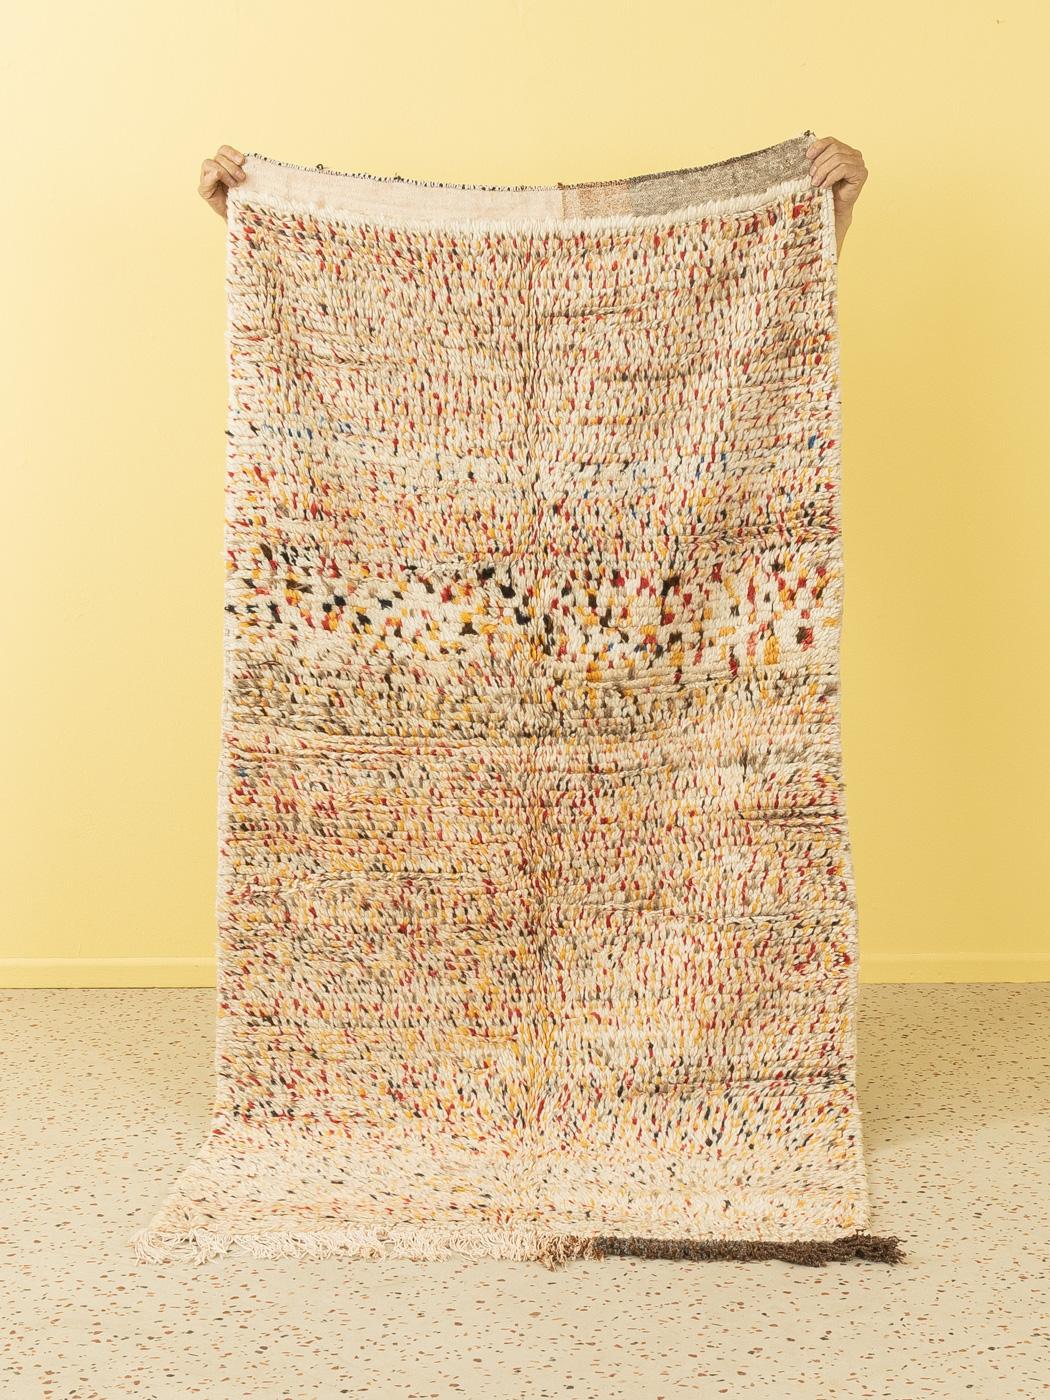 Dieser Azilal ist ein Teppich aus 100 % Vintage-Wolle - dick und weich, angenehm unter den Füßen. Unsere Berberteppiche sind handgefertigt, ein Knoten nach dem anderen. Jeder unserer Berberteppiche ist ein langlebiges Einzelstück, das auf